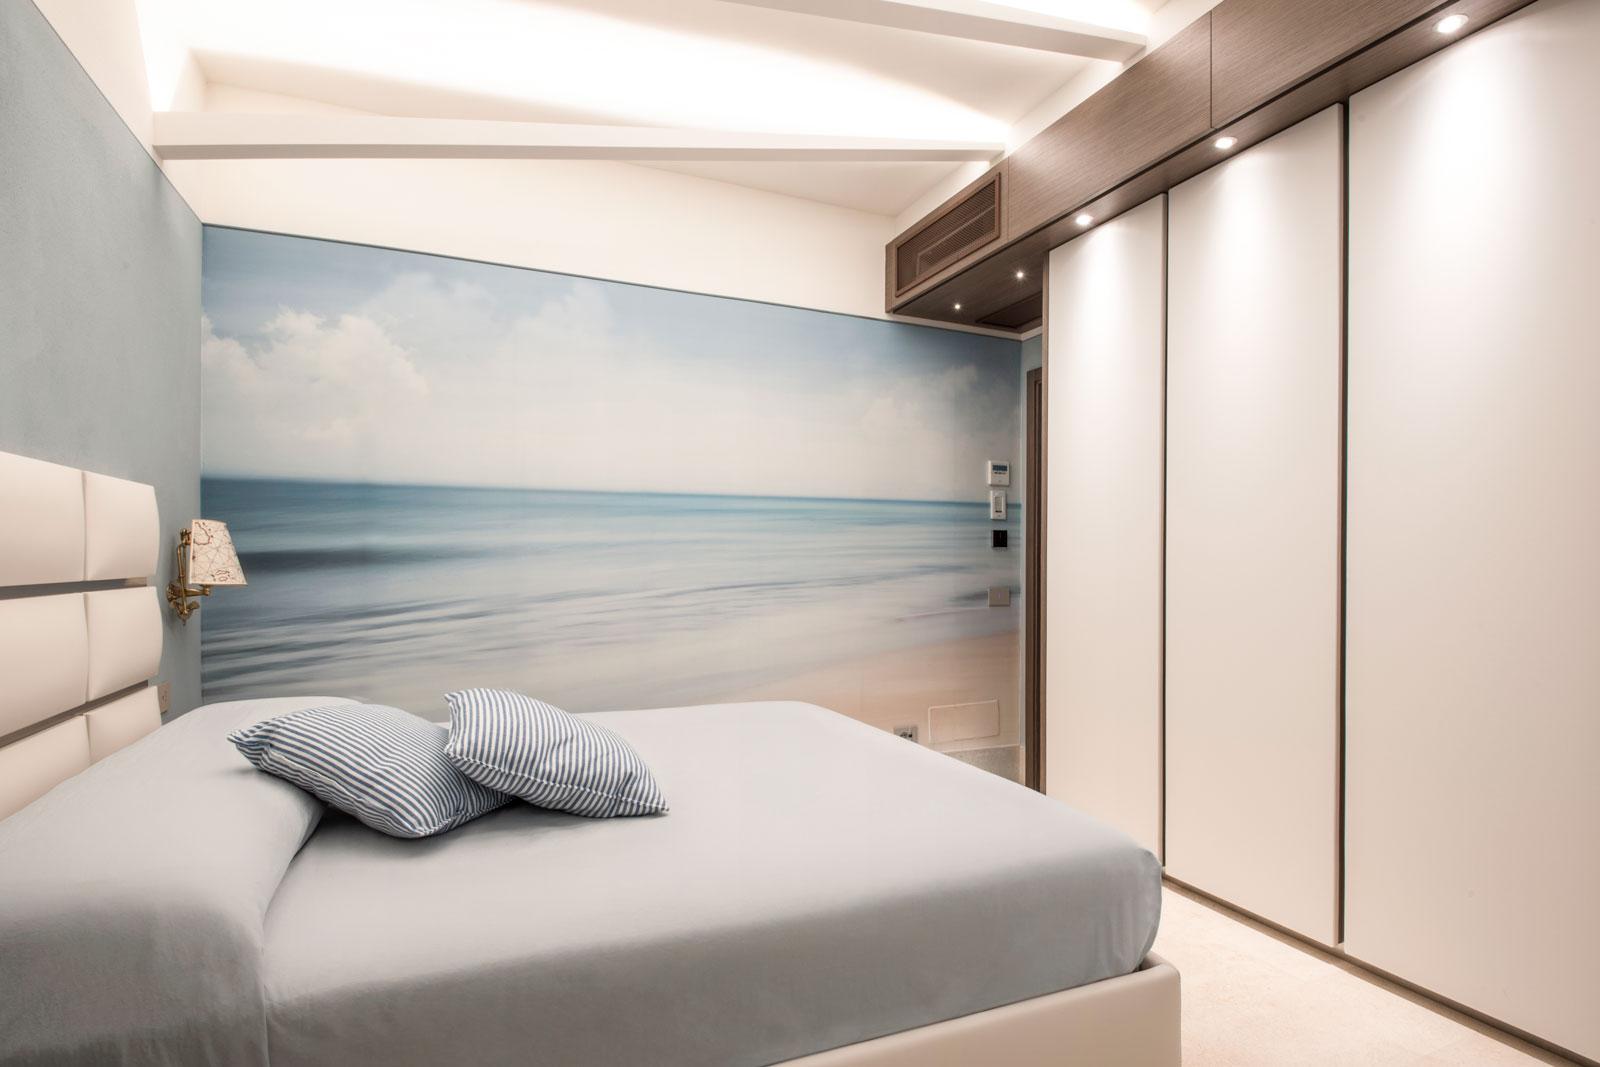 Camera da letto, armadio con sportelli in ecopelle bianca e illuminazione integrata, carta da parati a tema marino